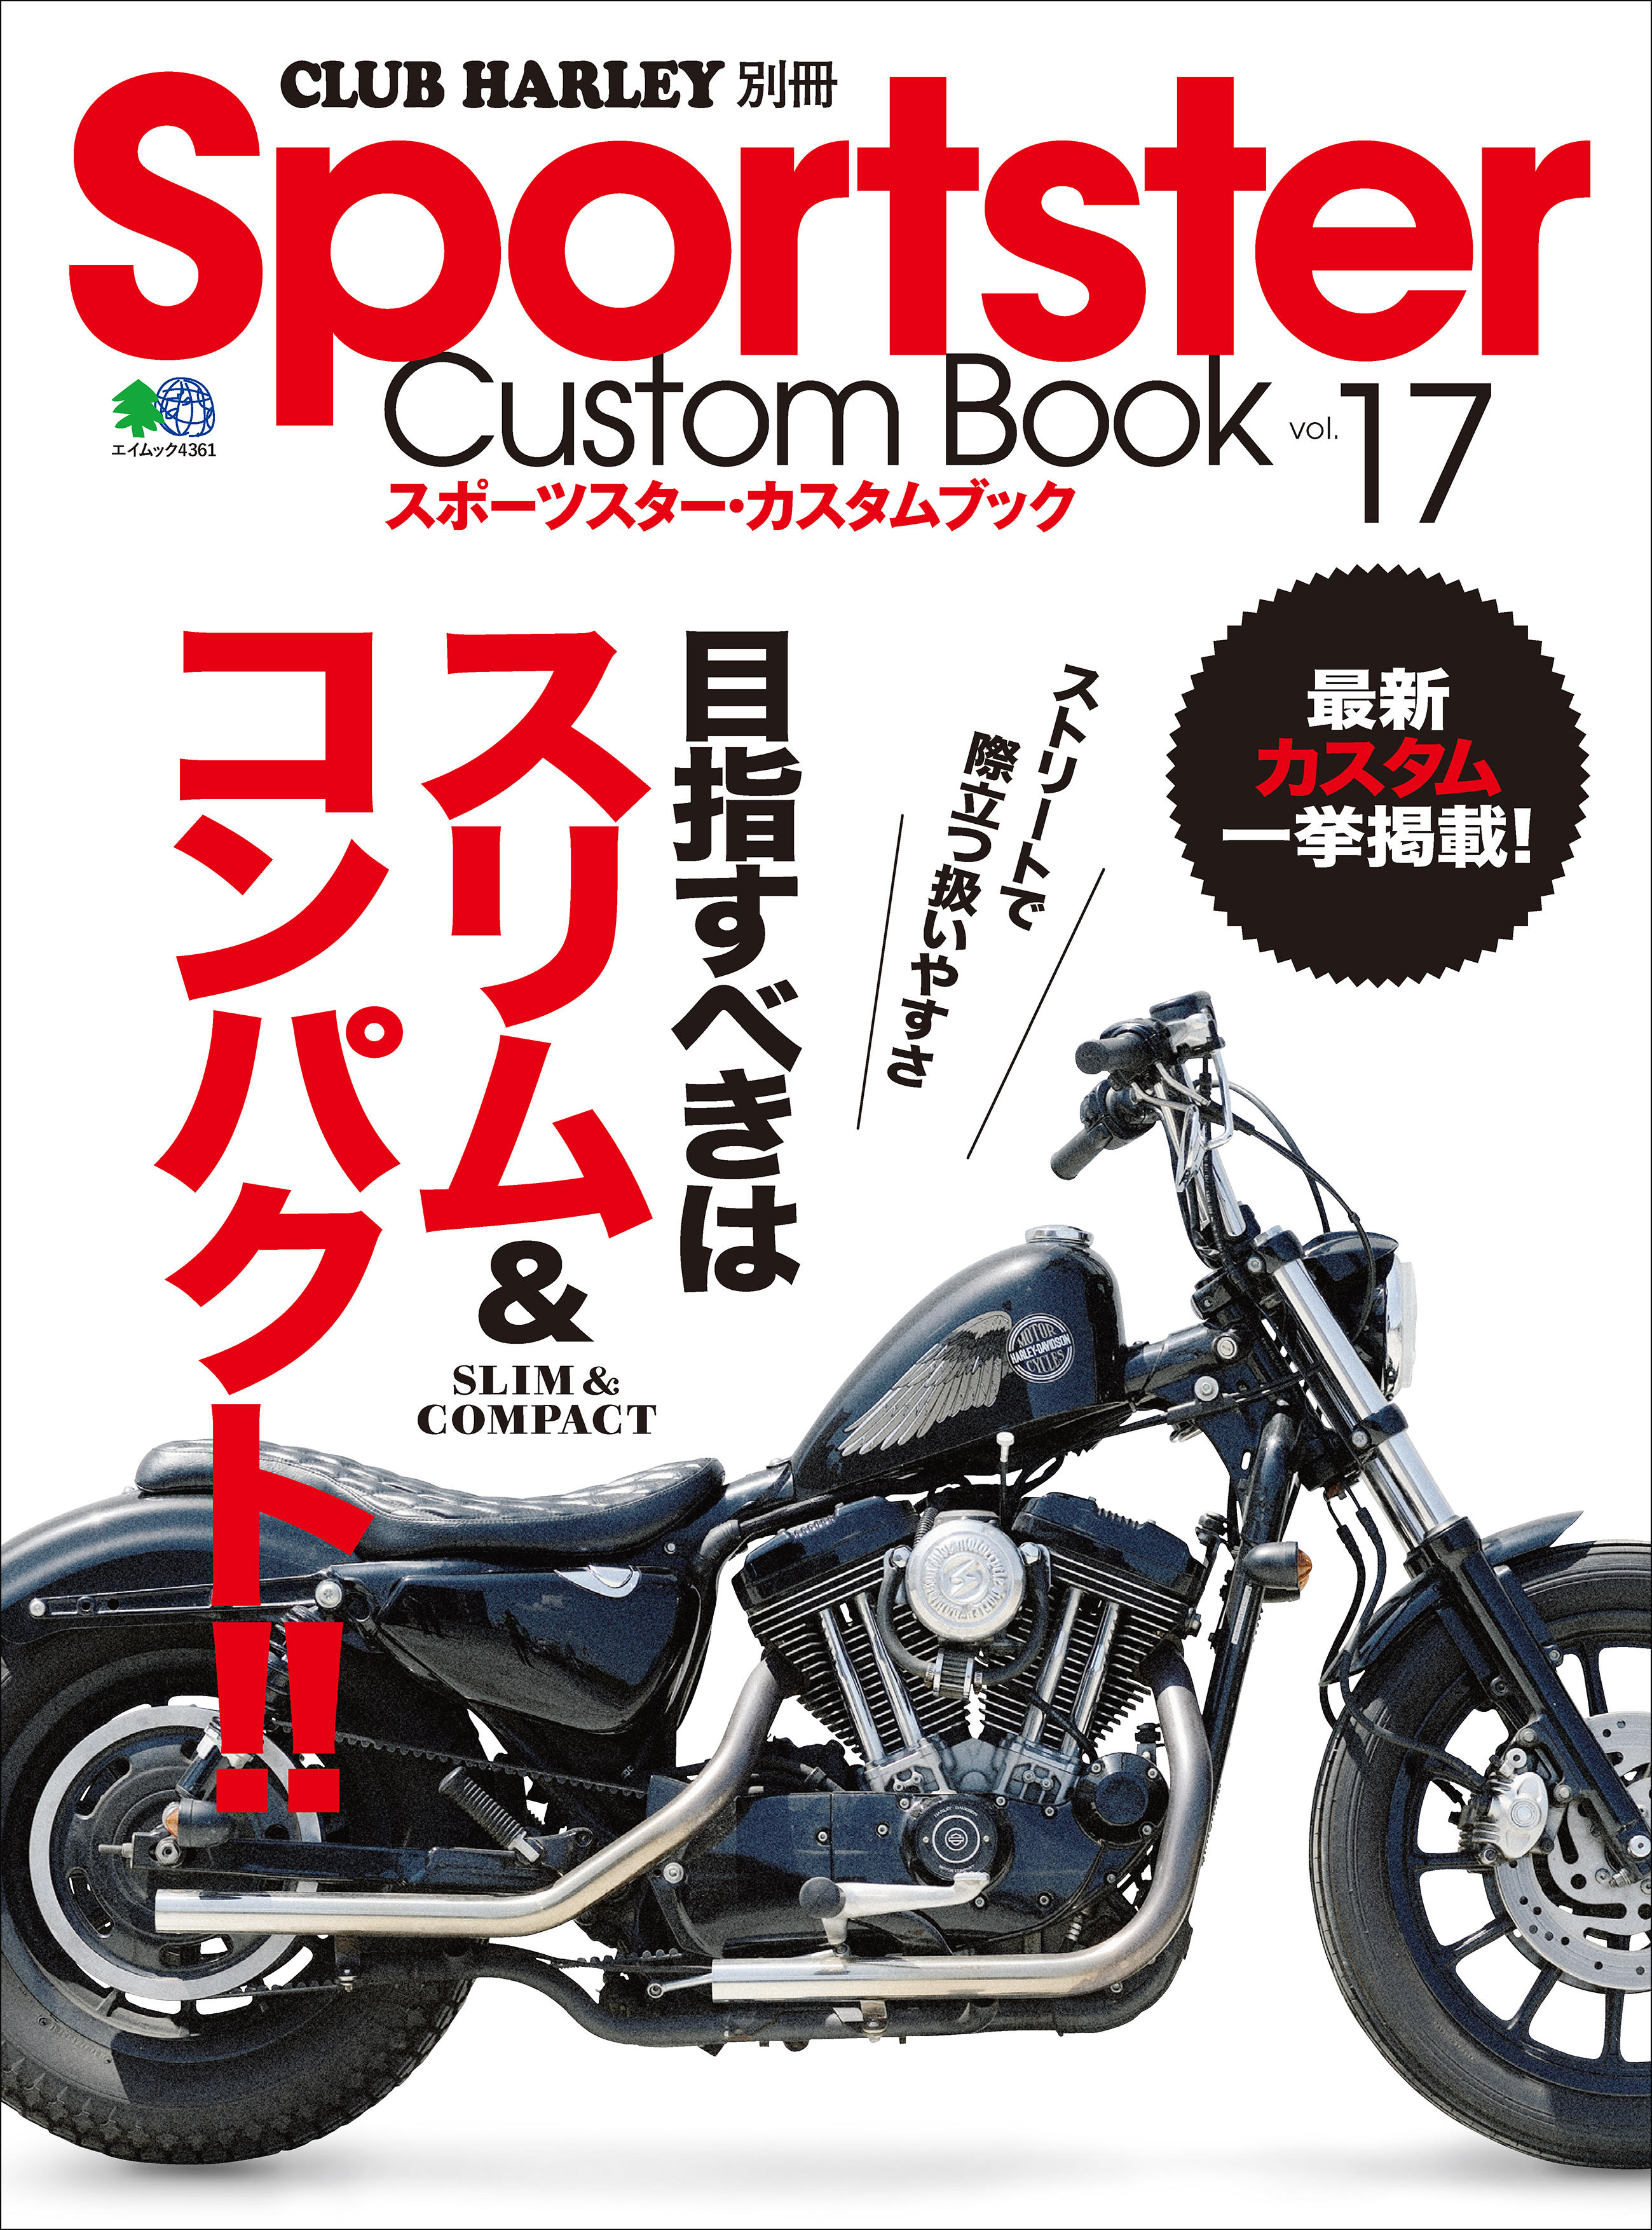 Sportster Custom Book Vol.17 - クラブハーレー編集部 - 漫画・ラノベ